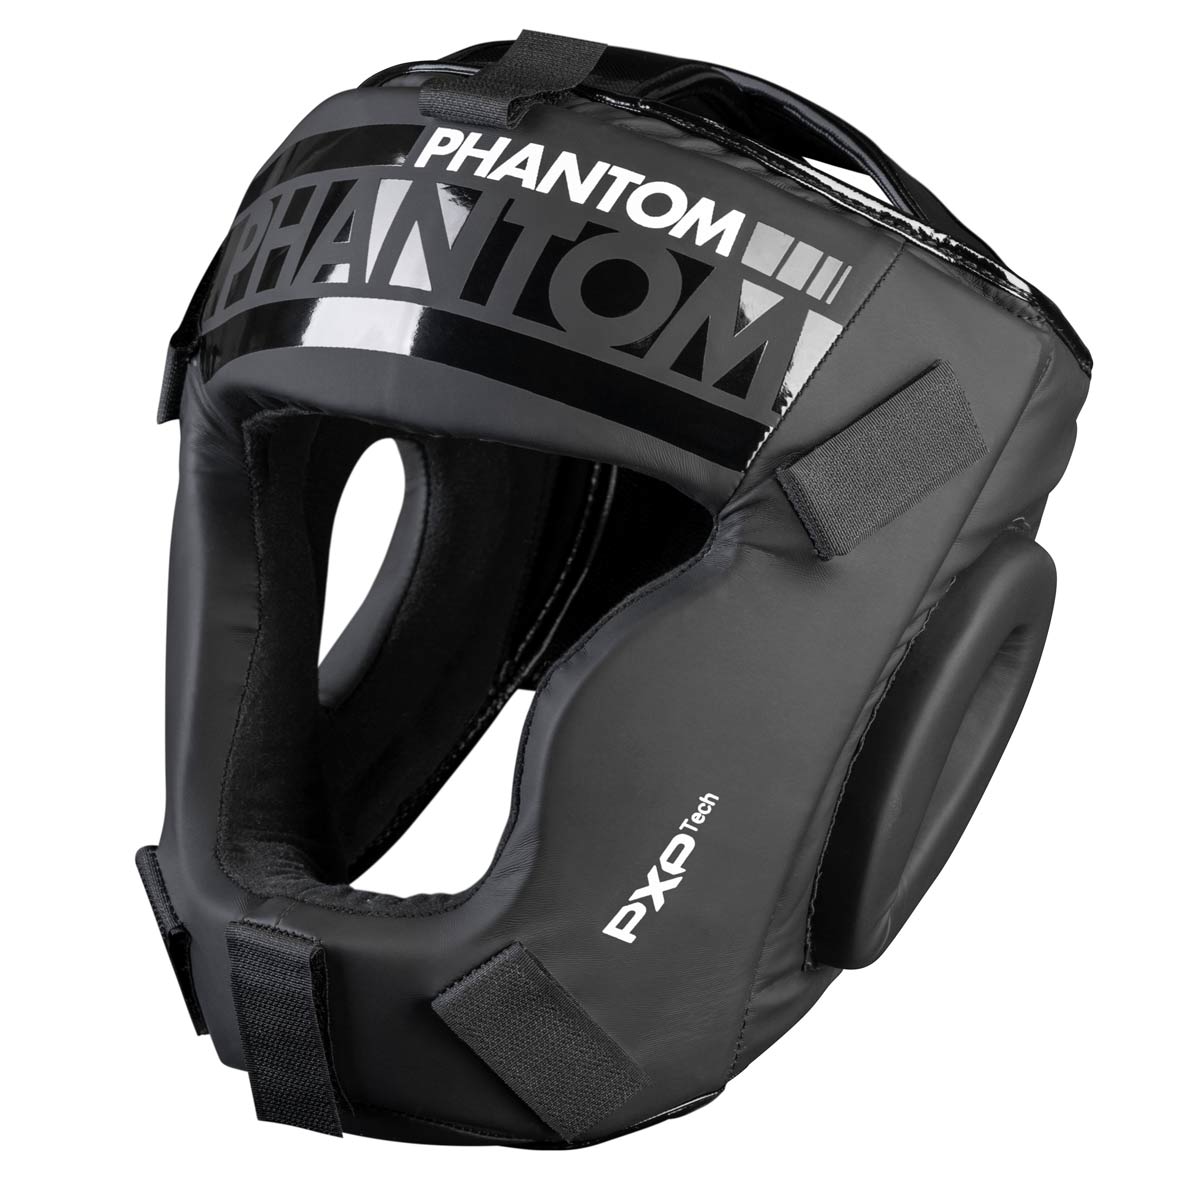 Der Phantom Apex Cage Kopfschutz für sicheres Sparring. Hier lässt sich der Gesichtsschutz entfernen.